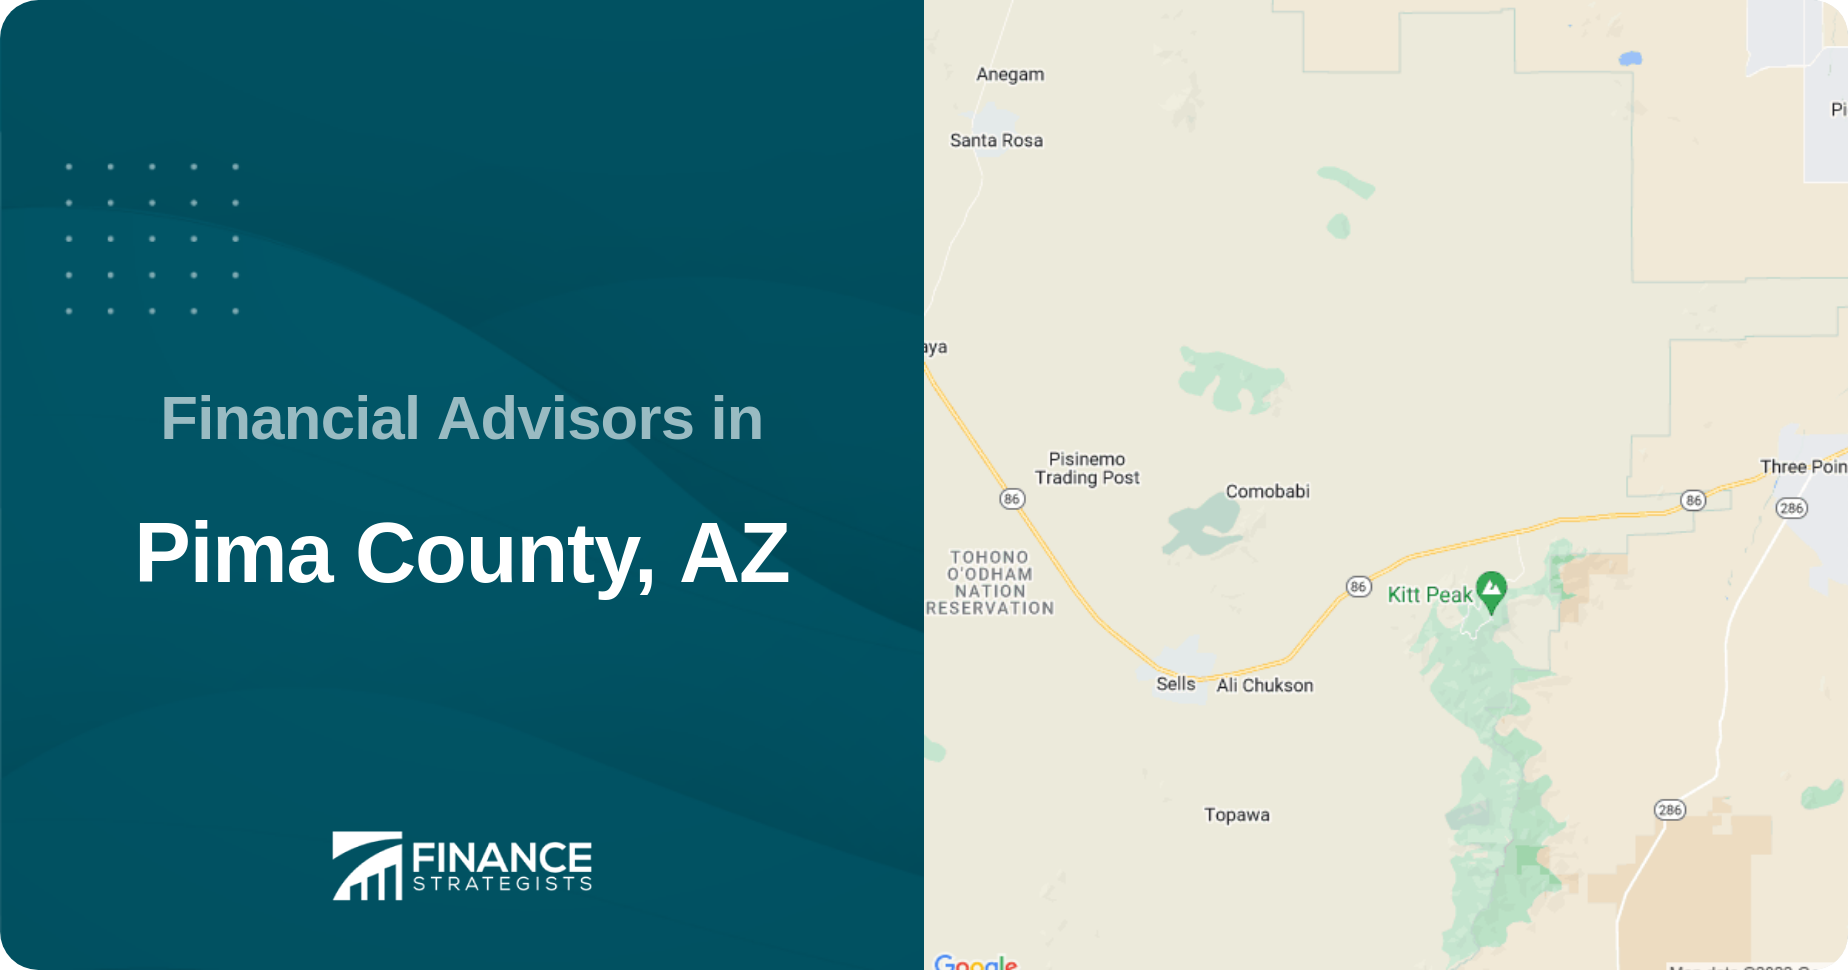 Financial Advisors in Pima County, AZ